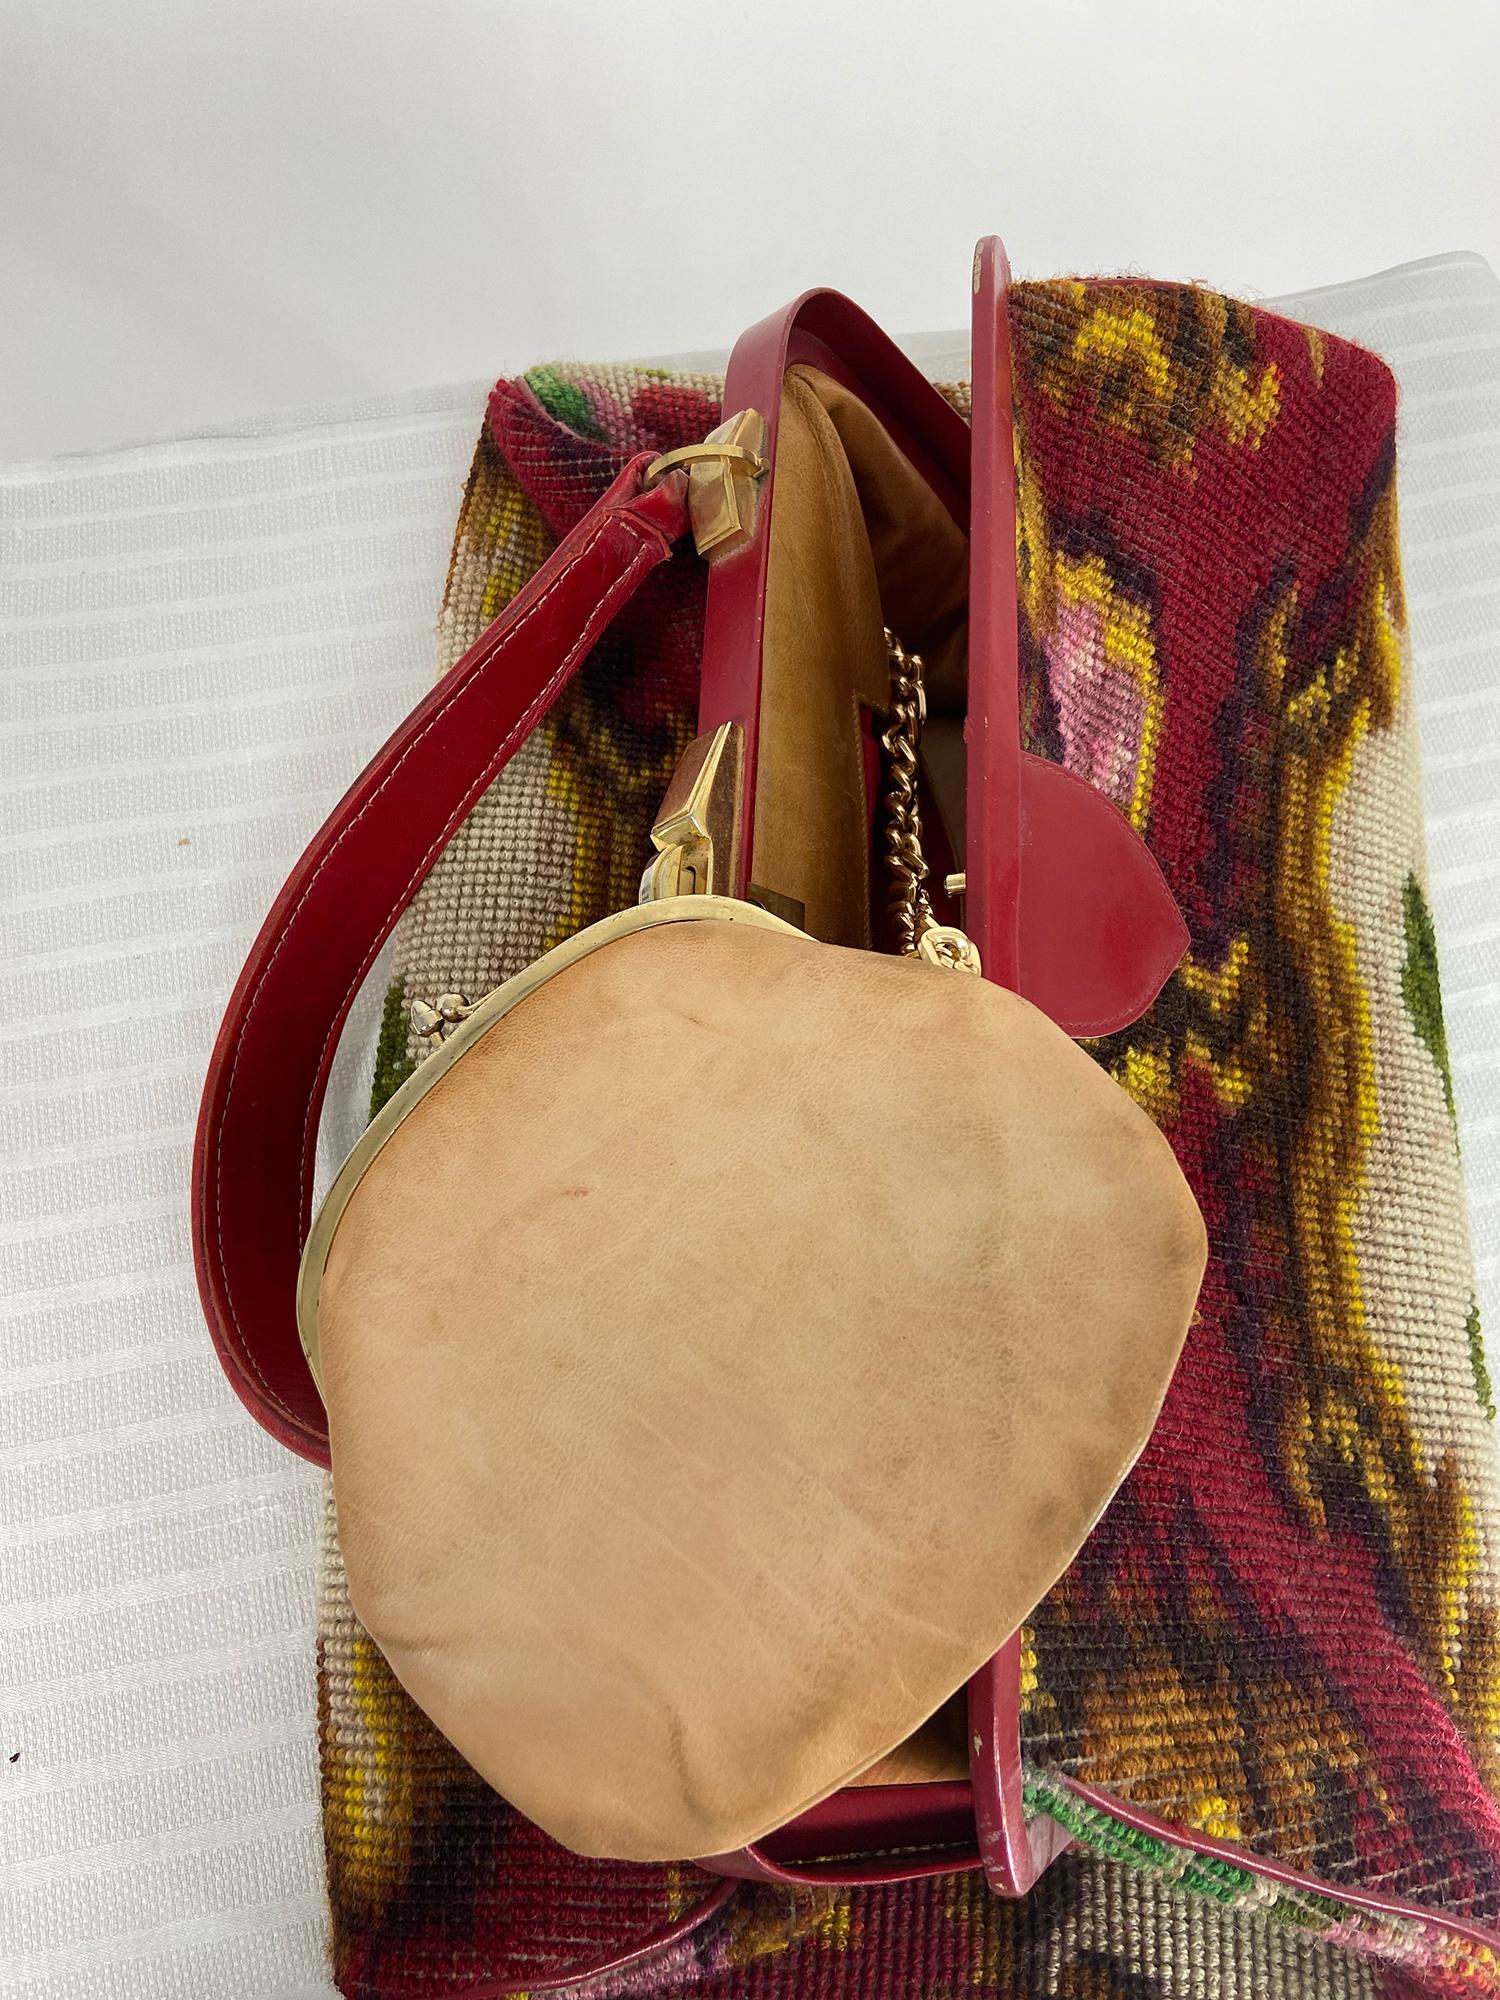 Koret Roses Frame Carpet Bag Rare 1960s Leather Interior Handbag 2